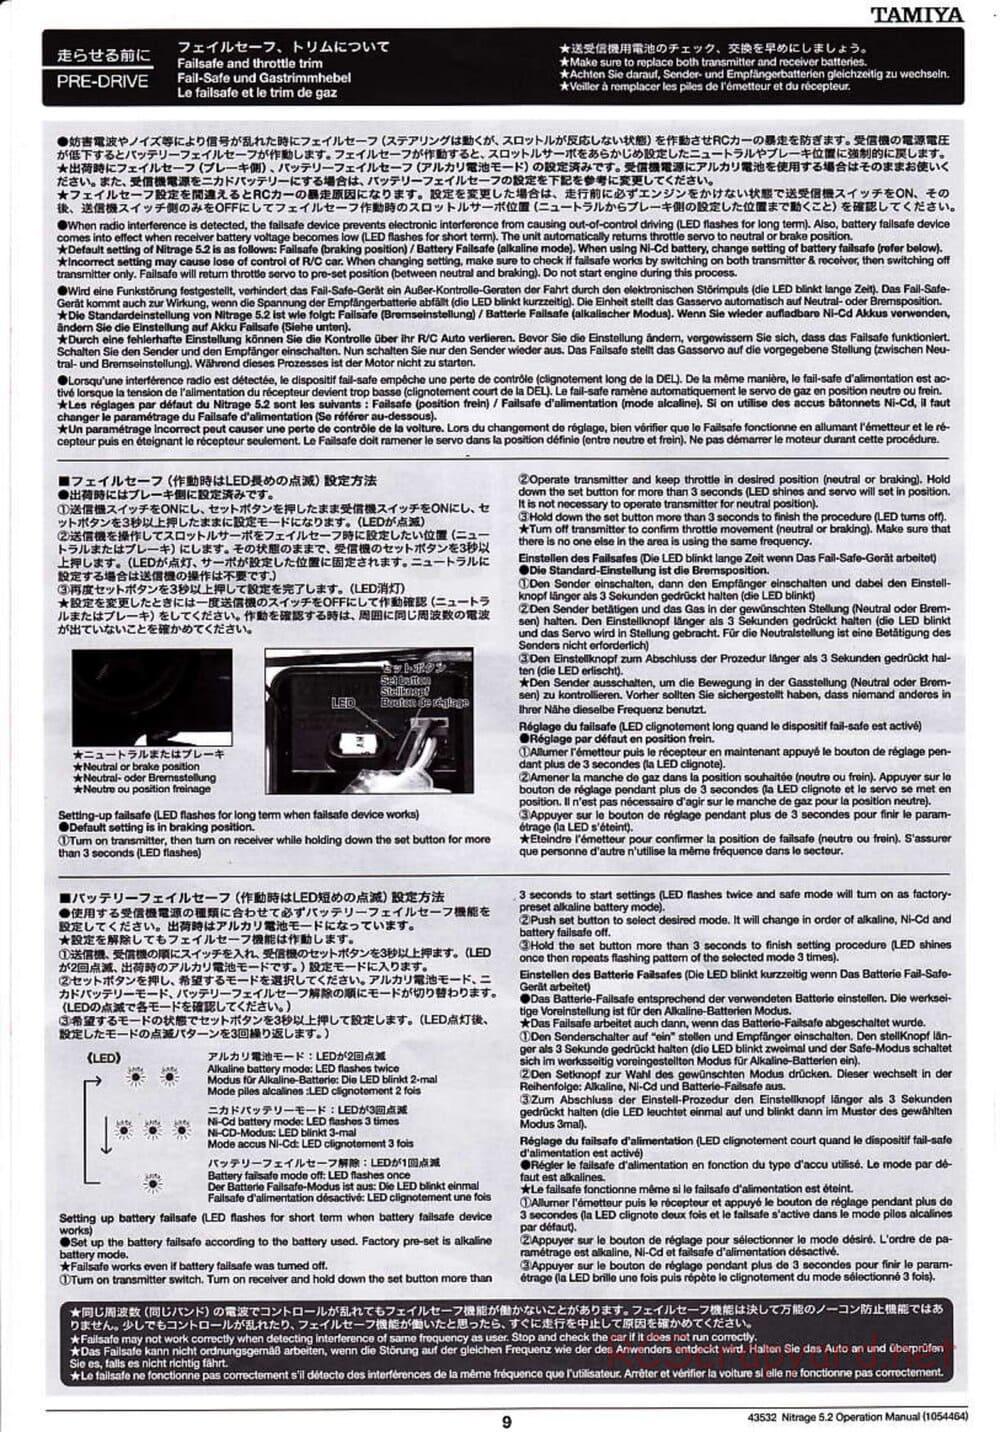 Tamiya - Nitrage 5.2 - Operating Manual - Page 9